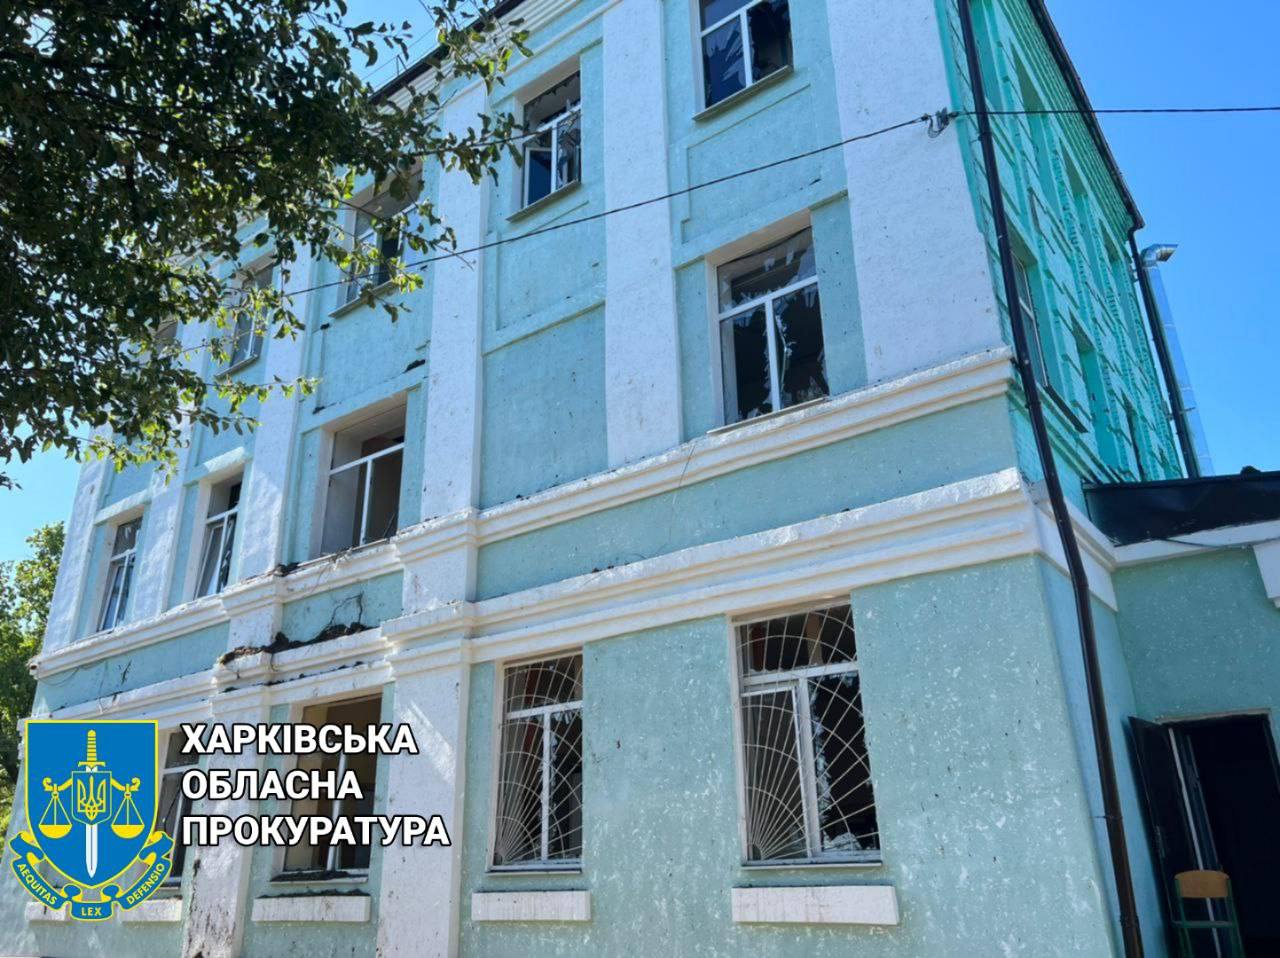 Утром враг нанес ракетный удар по Новобаварскому району Харькова, ранена 54-летняя женщина